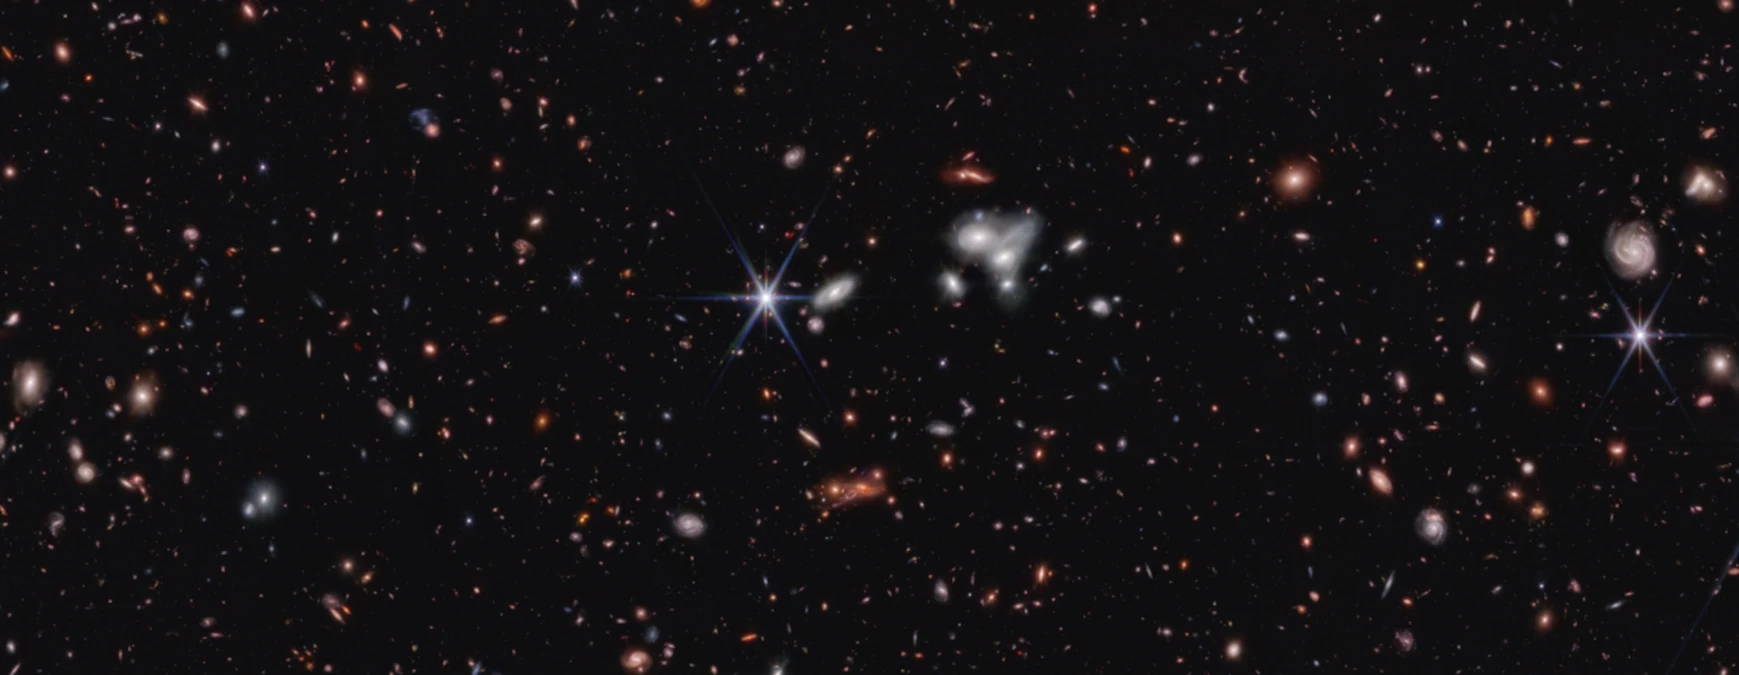 El Telescopio James Webb ha capturado el agujero negro supermasivo más distante jamás visto, apenas 570 millones de años después del Big Bang